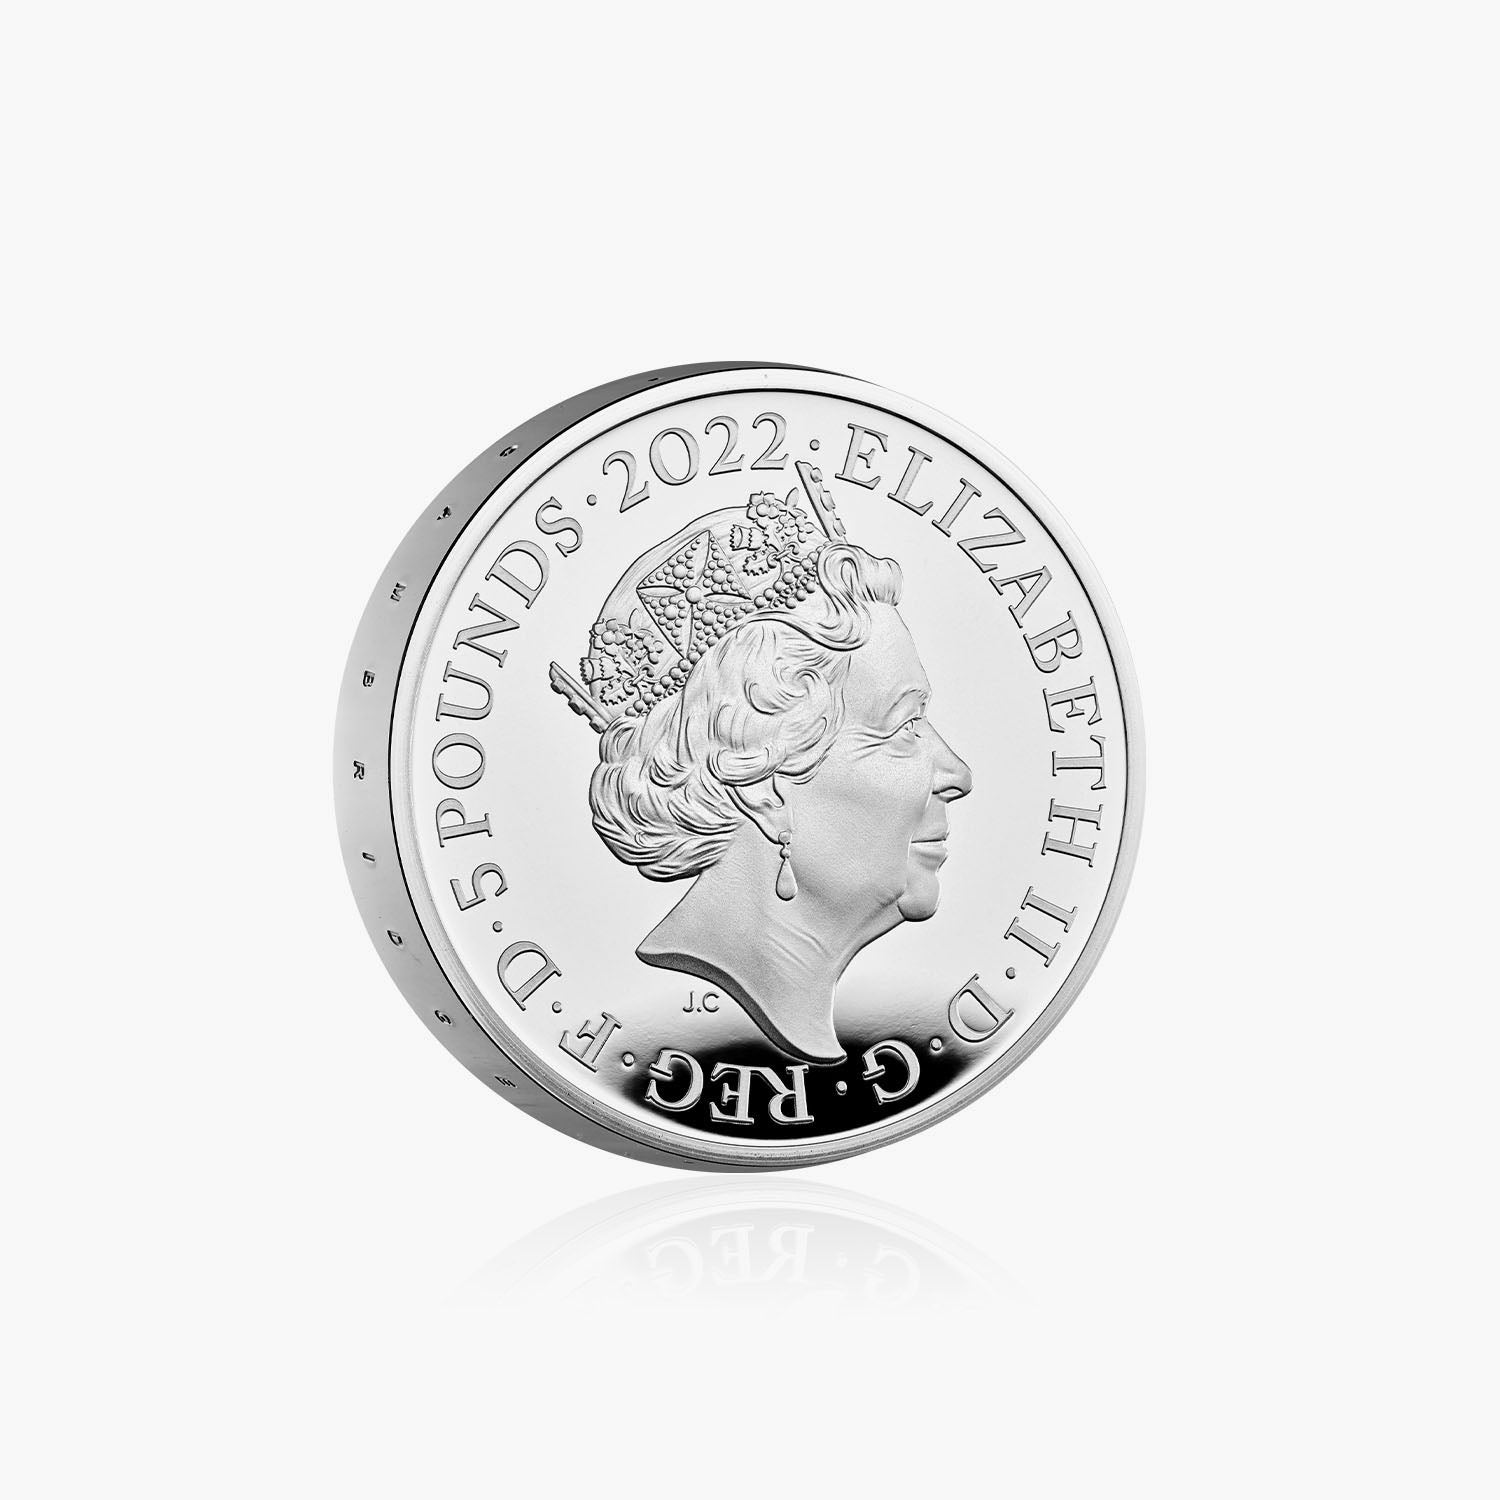 種類外国貨幣硬貨アルフレッド大王 2021英国 £5 シルバープルーフ ピエフォールト 限定版